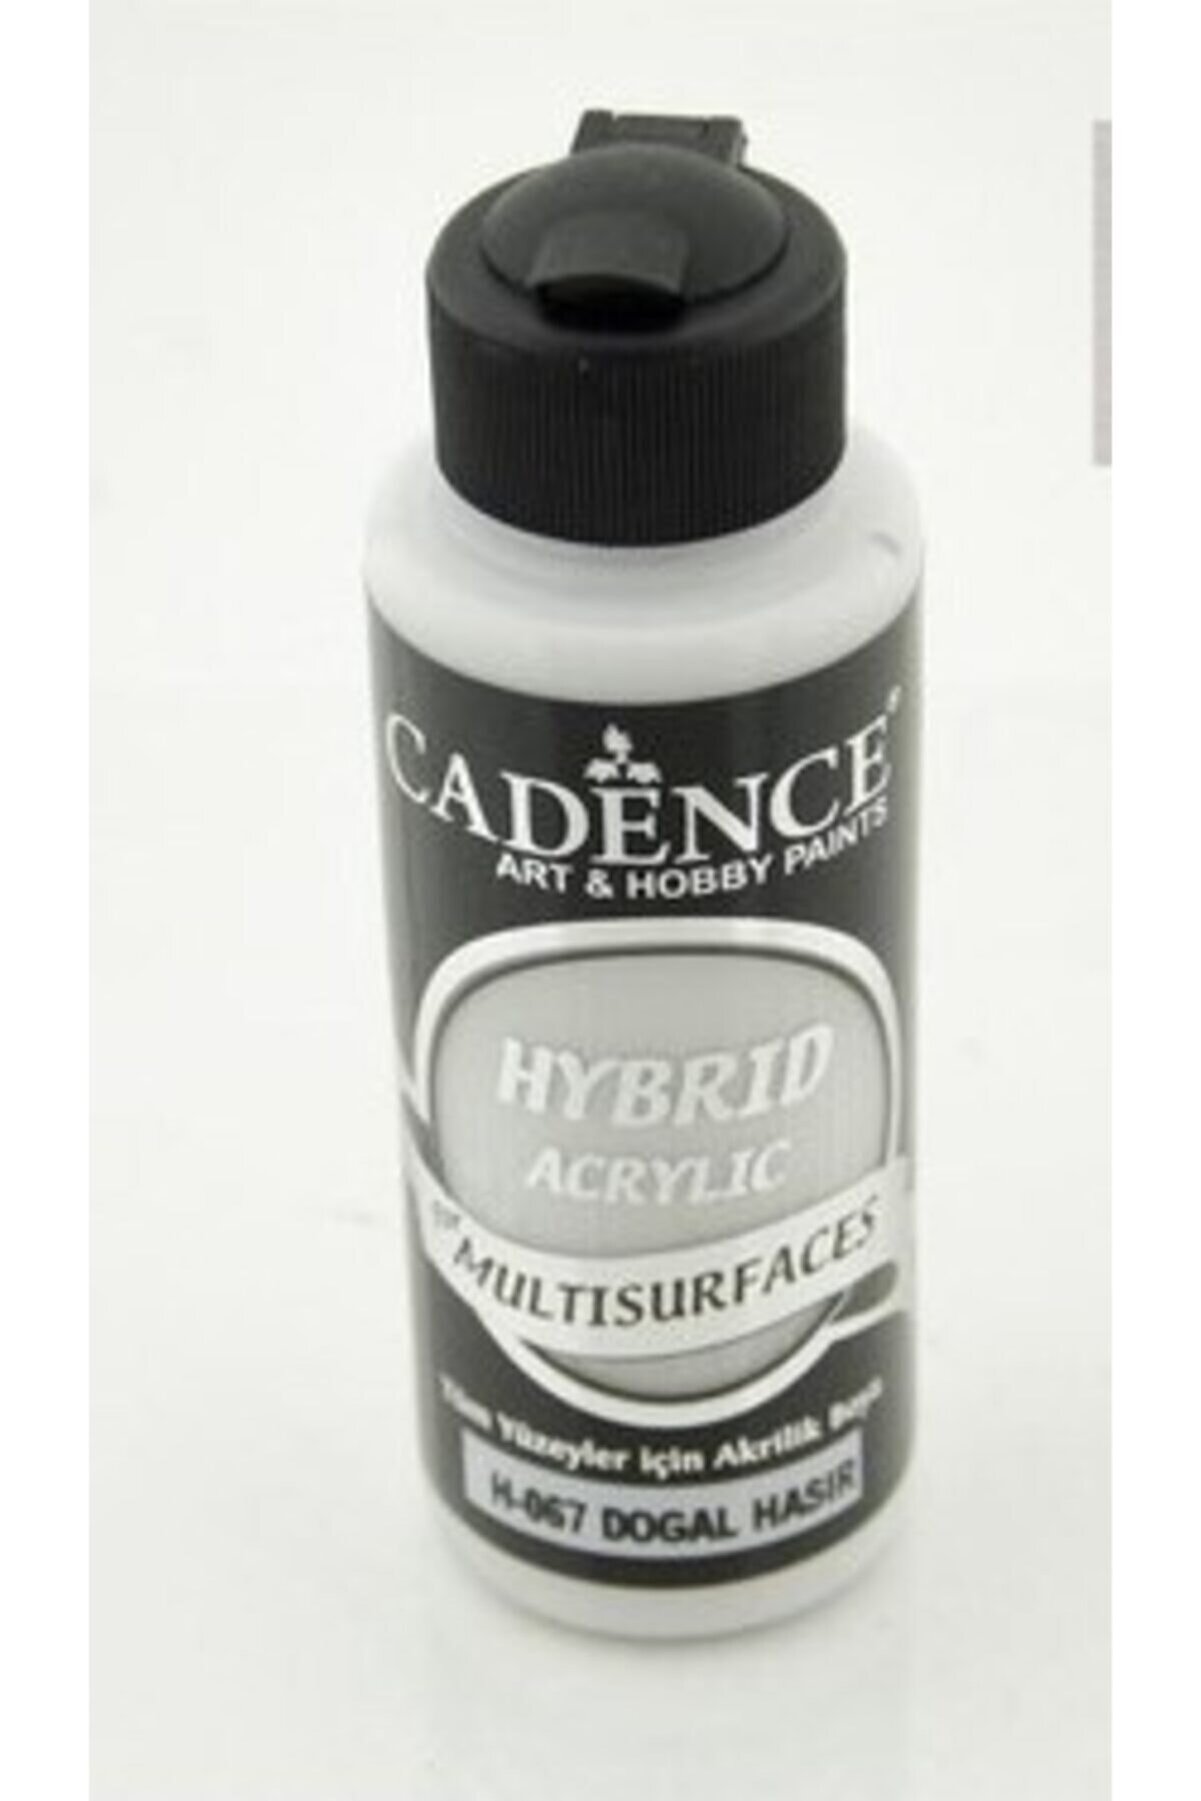 Cadence Multisurface Hibrit Boya H067 Doğal Hasır 120 ml